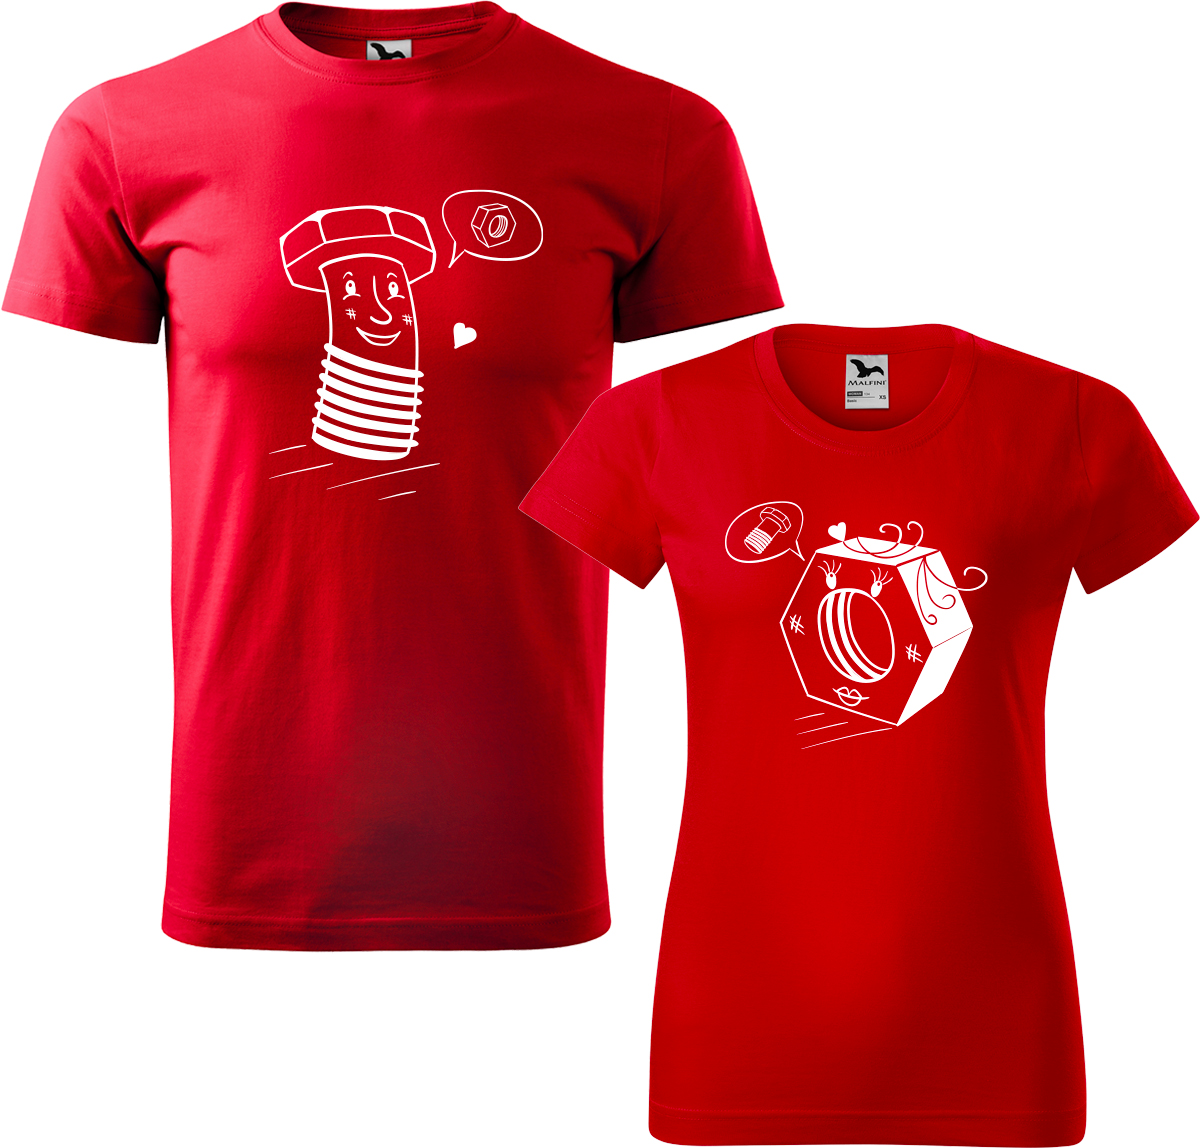 Trička pro páry - Šroubek a matička Barva: Červená (07), Velikost dámské tričko: S, Velikost pánské tričko: M